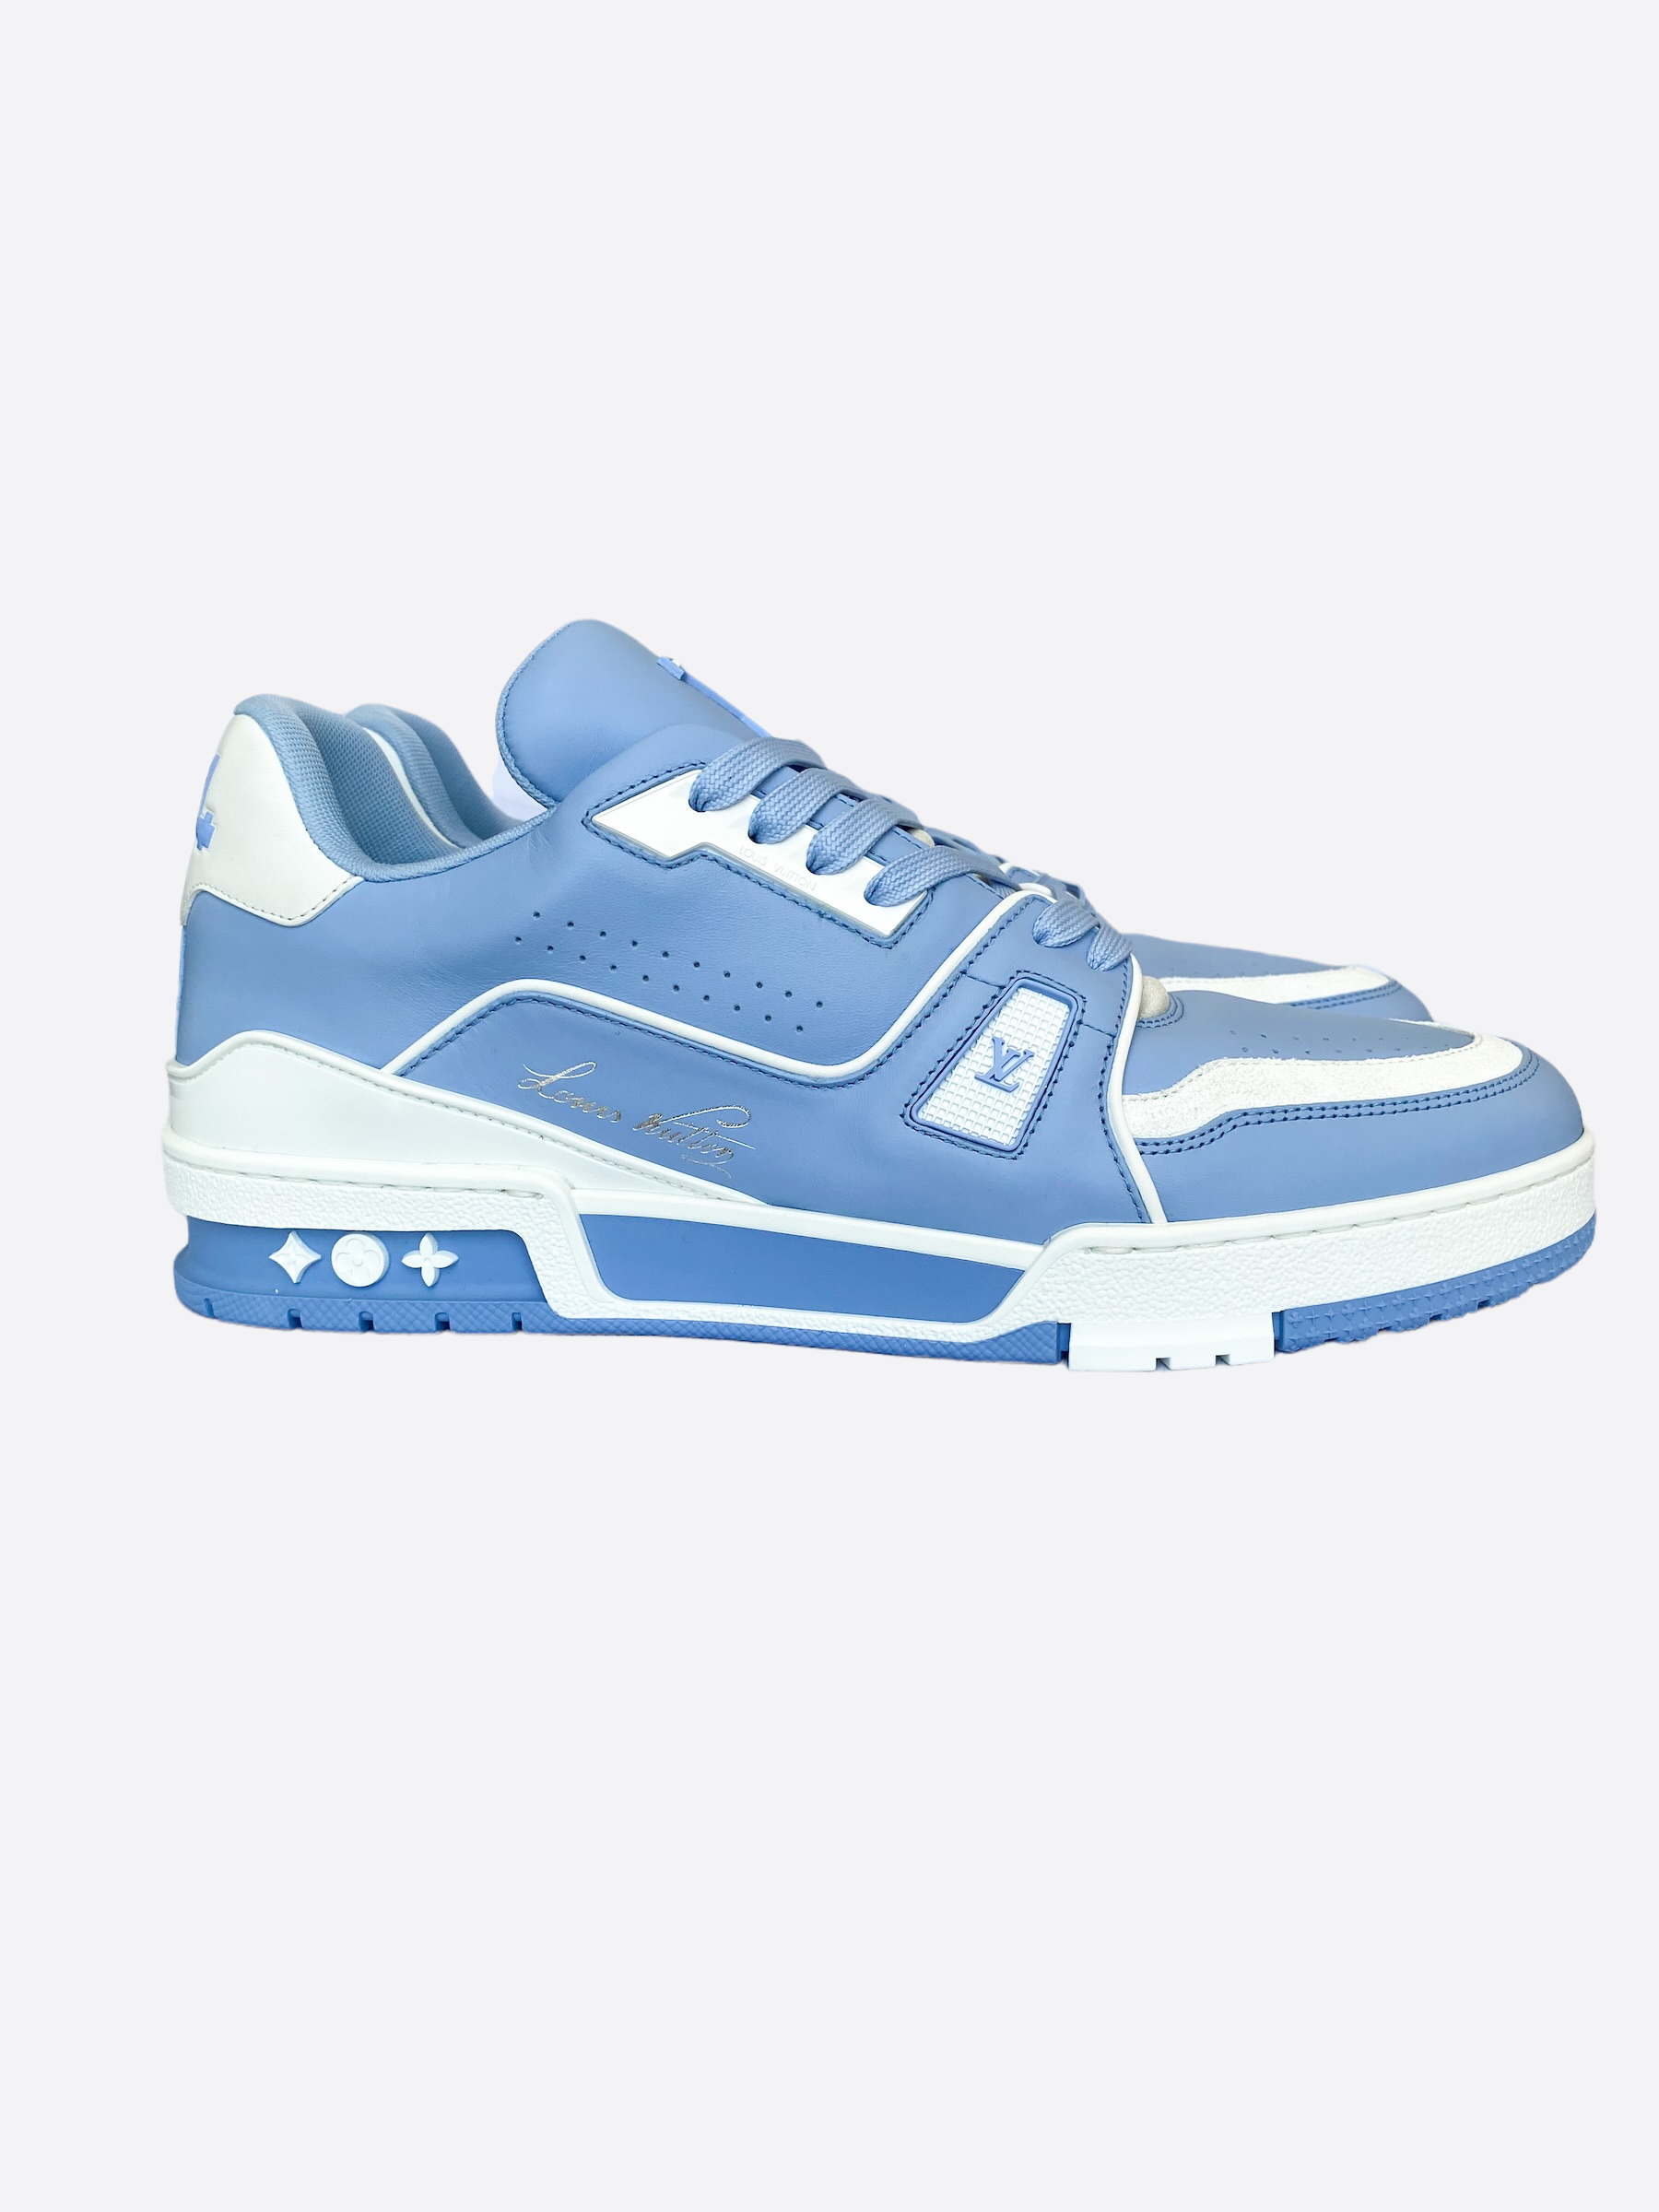 Louis Vuitton - LV Trainer Sneaker Blue. Size 9